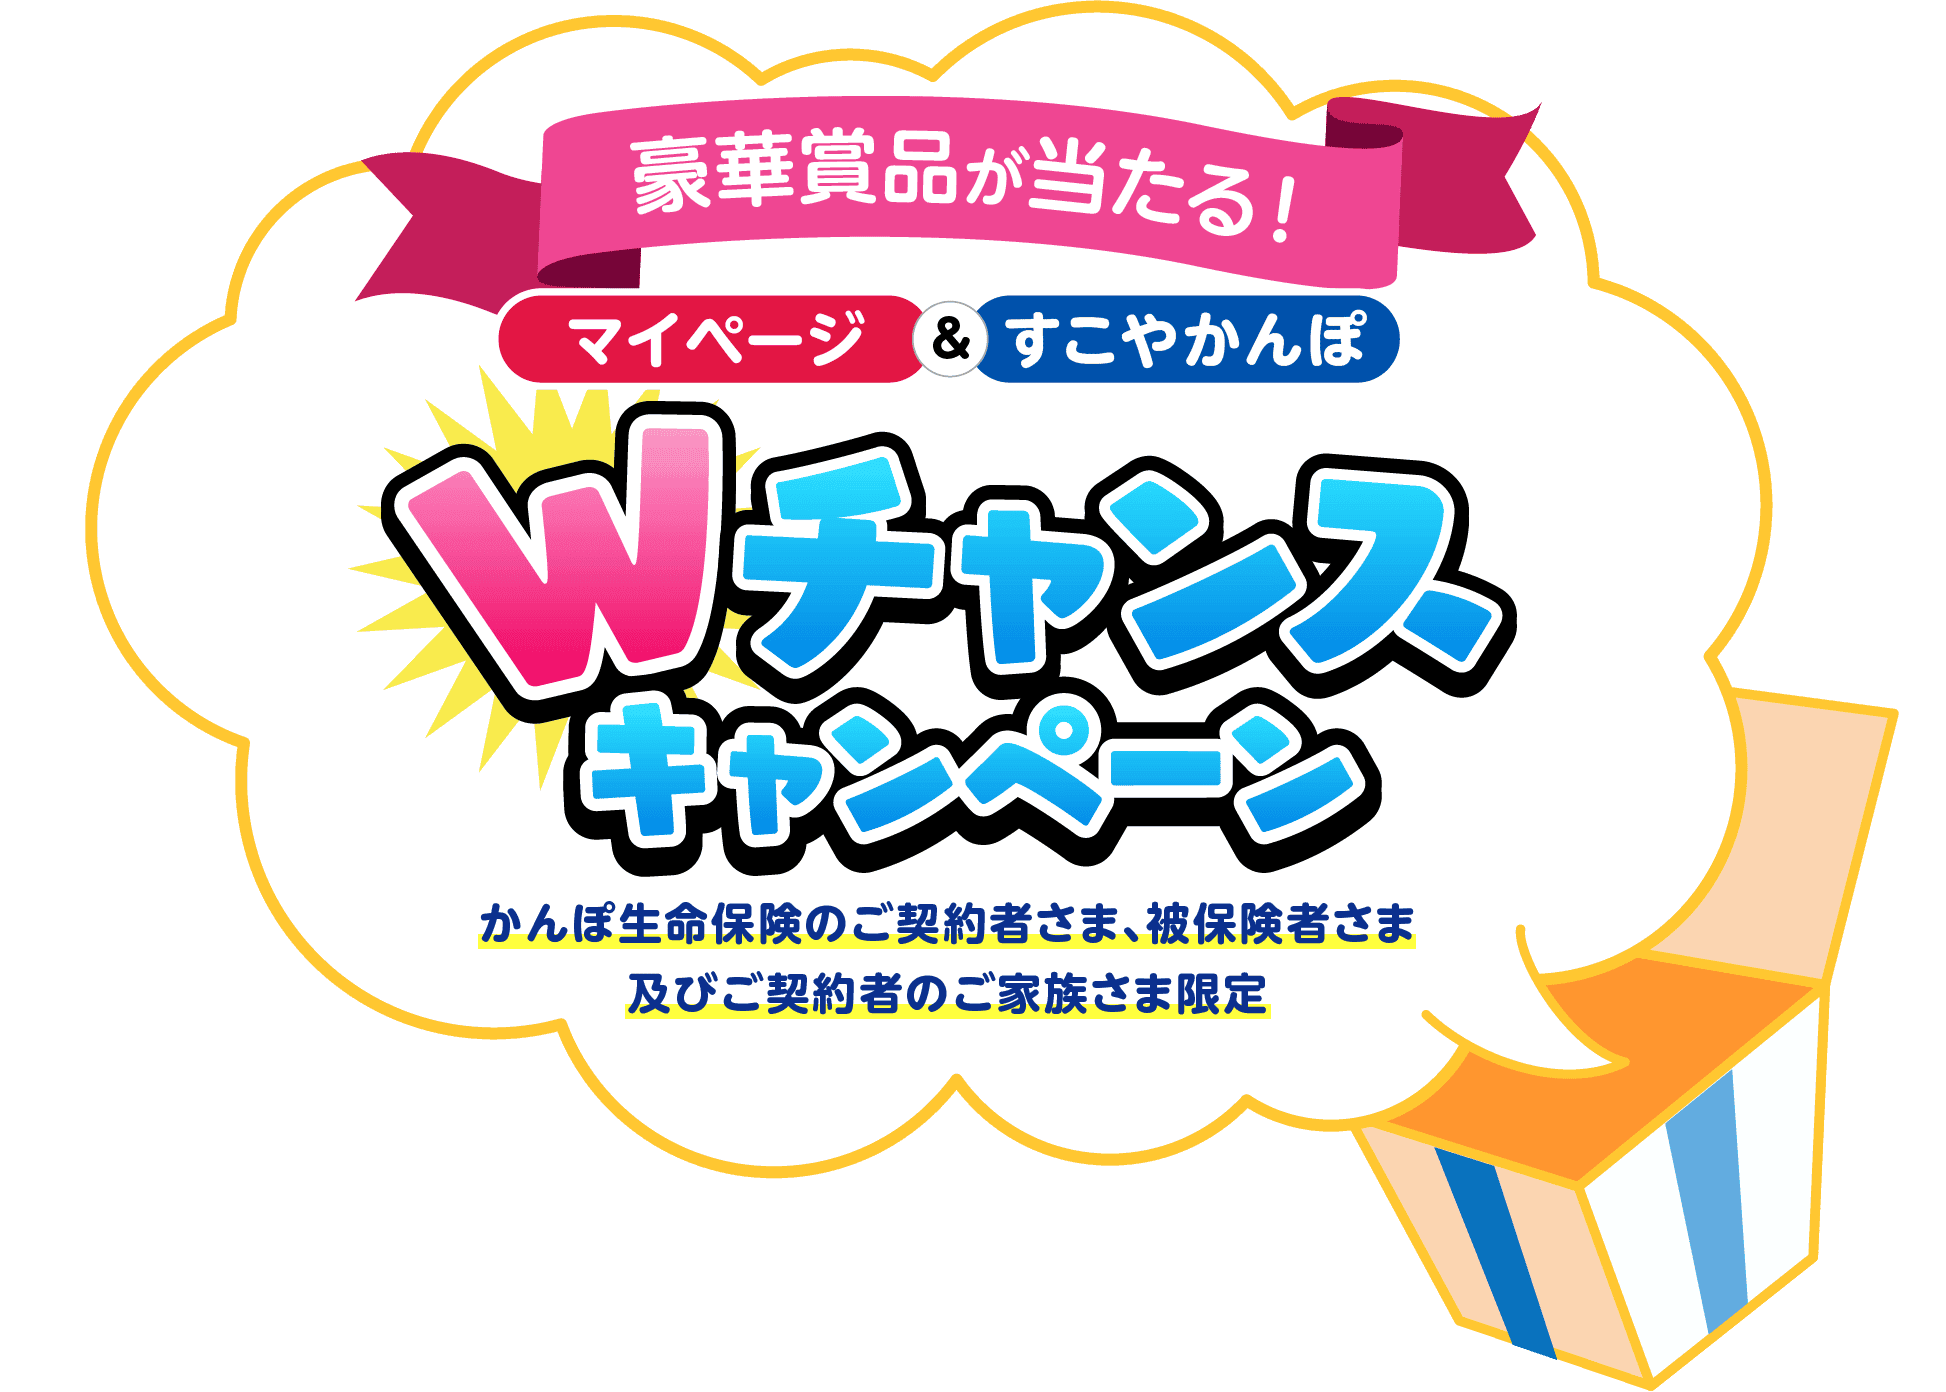 マイページ&すこやかんぽ Wチャンスキャンペーン｜かんぽ生命保険